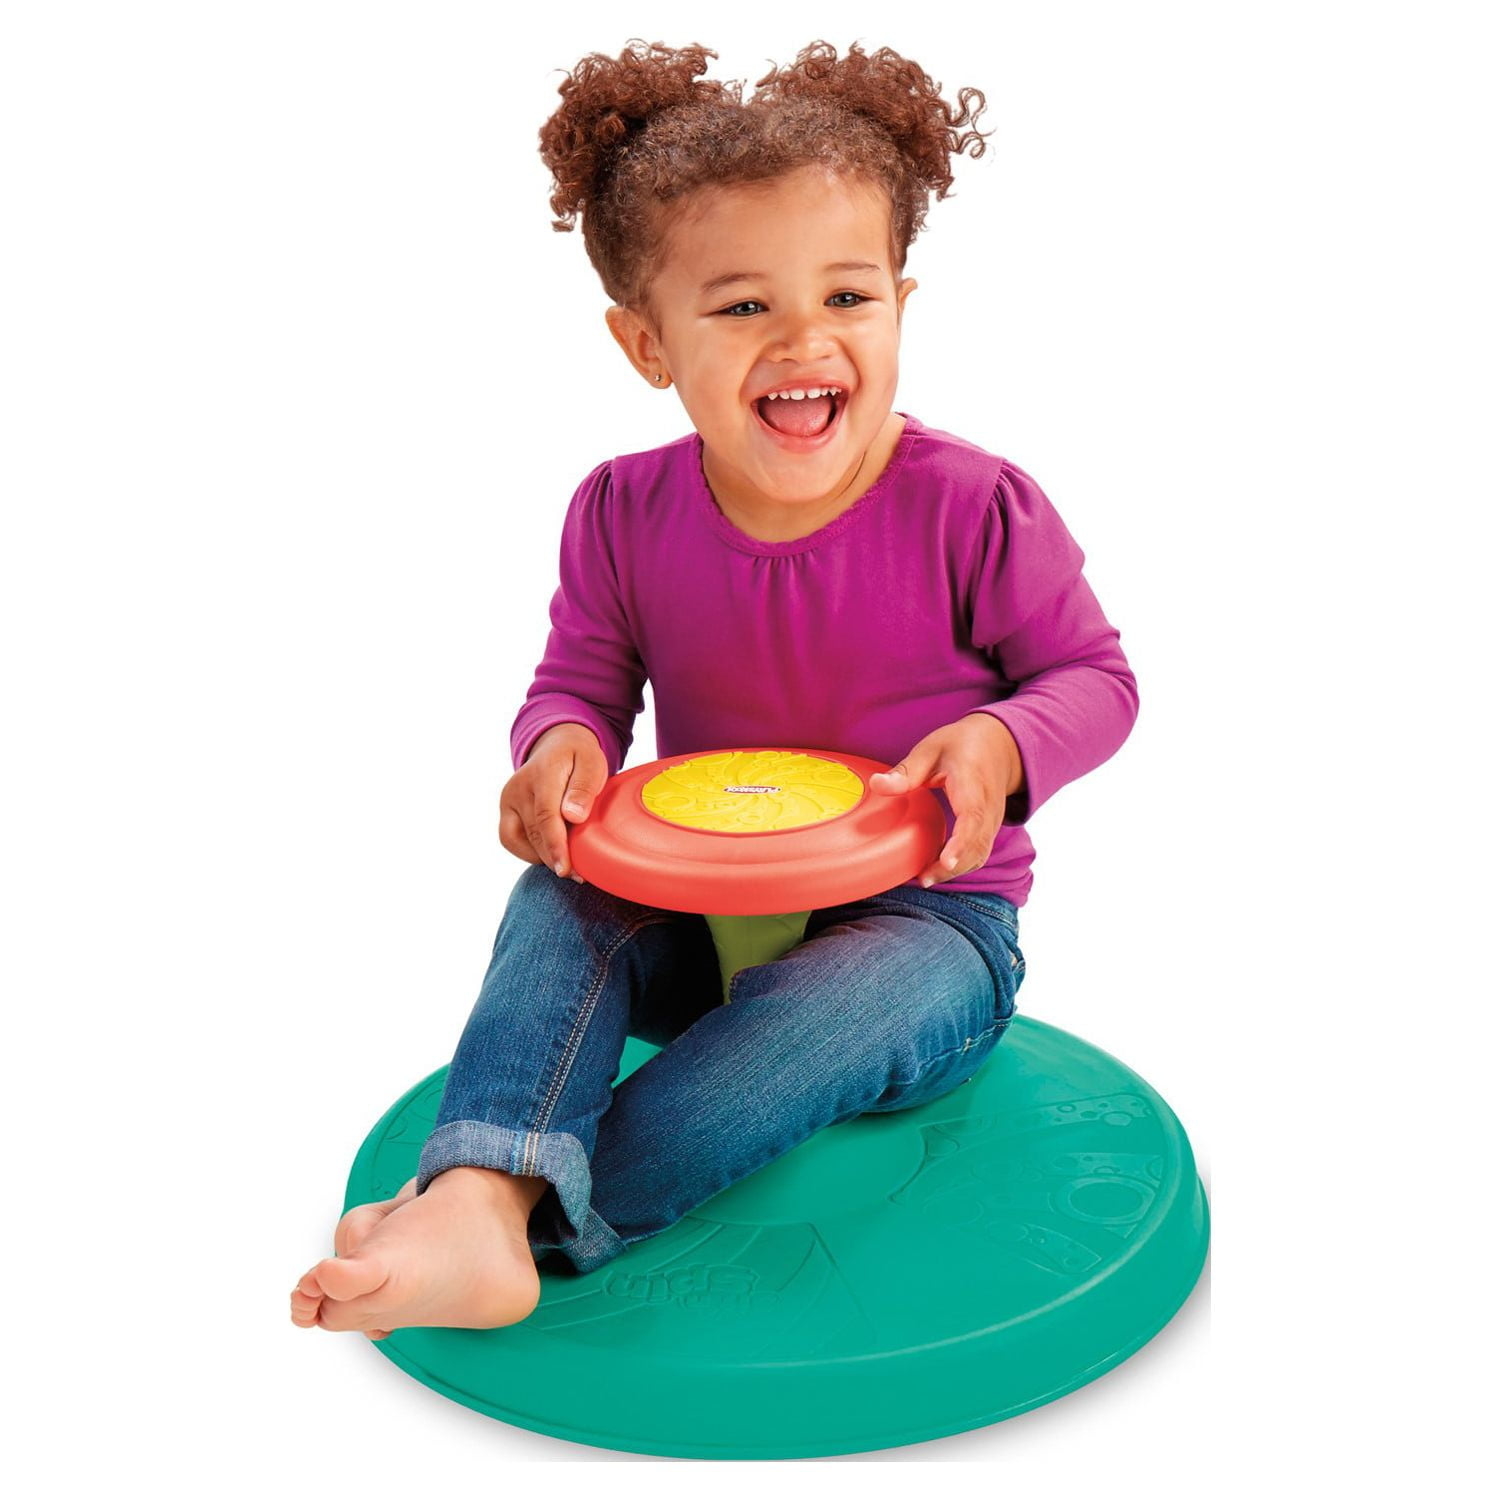 Toddler siting on circular spinning disc